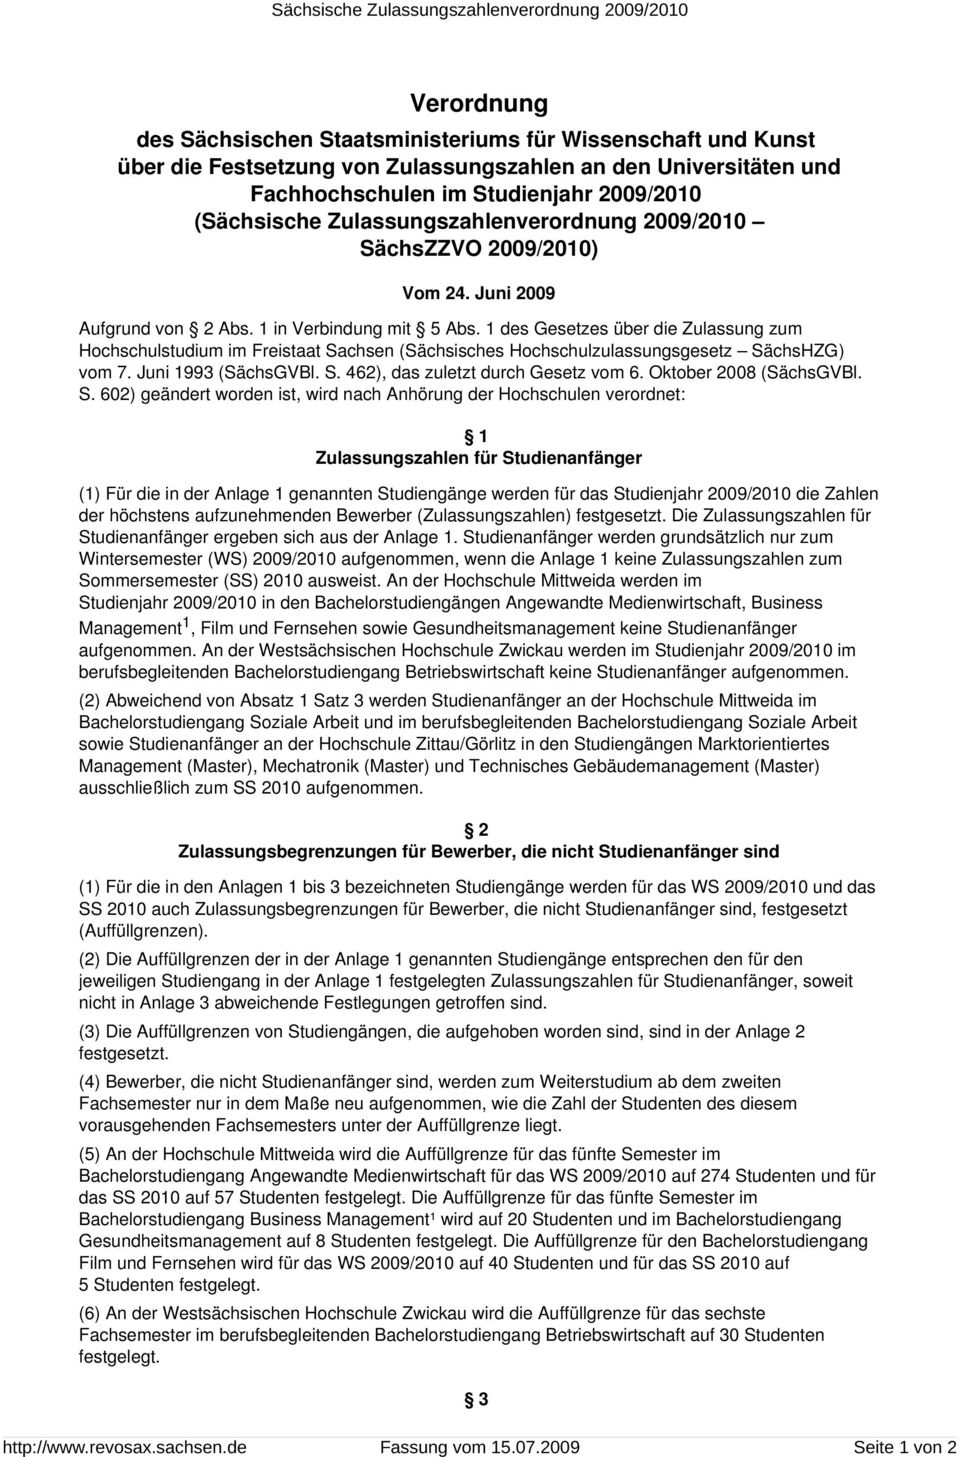 1 des Gesetzes über die Zulassung zum Hochschulstudium im Freistaat Sachsen (Sächsisches Hochschulzulassungsgesetz SächsHZG) vom 7. Juni 1993 (SächsGVBl. S. 462), das zuletzt durch Gesetz vom 6.